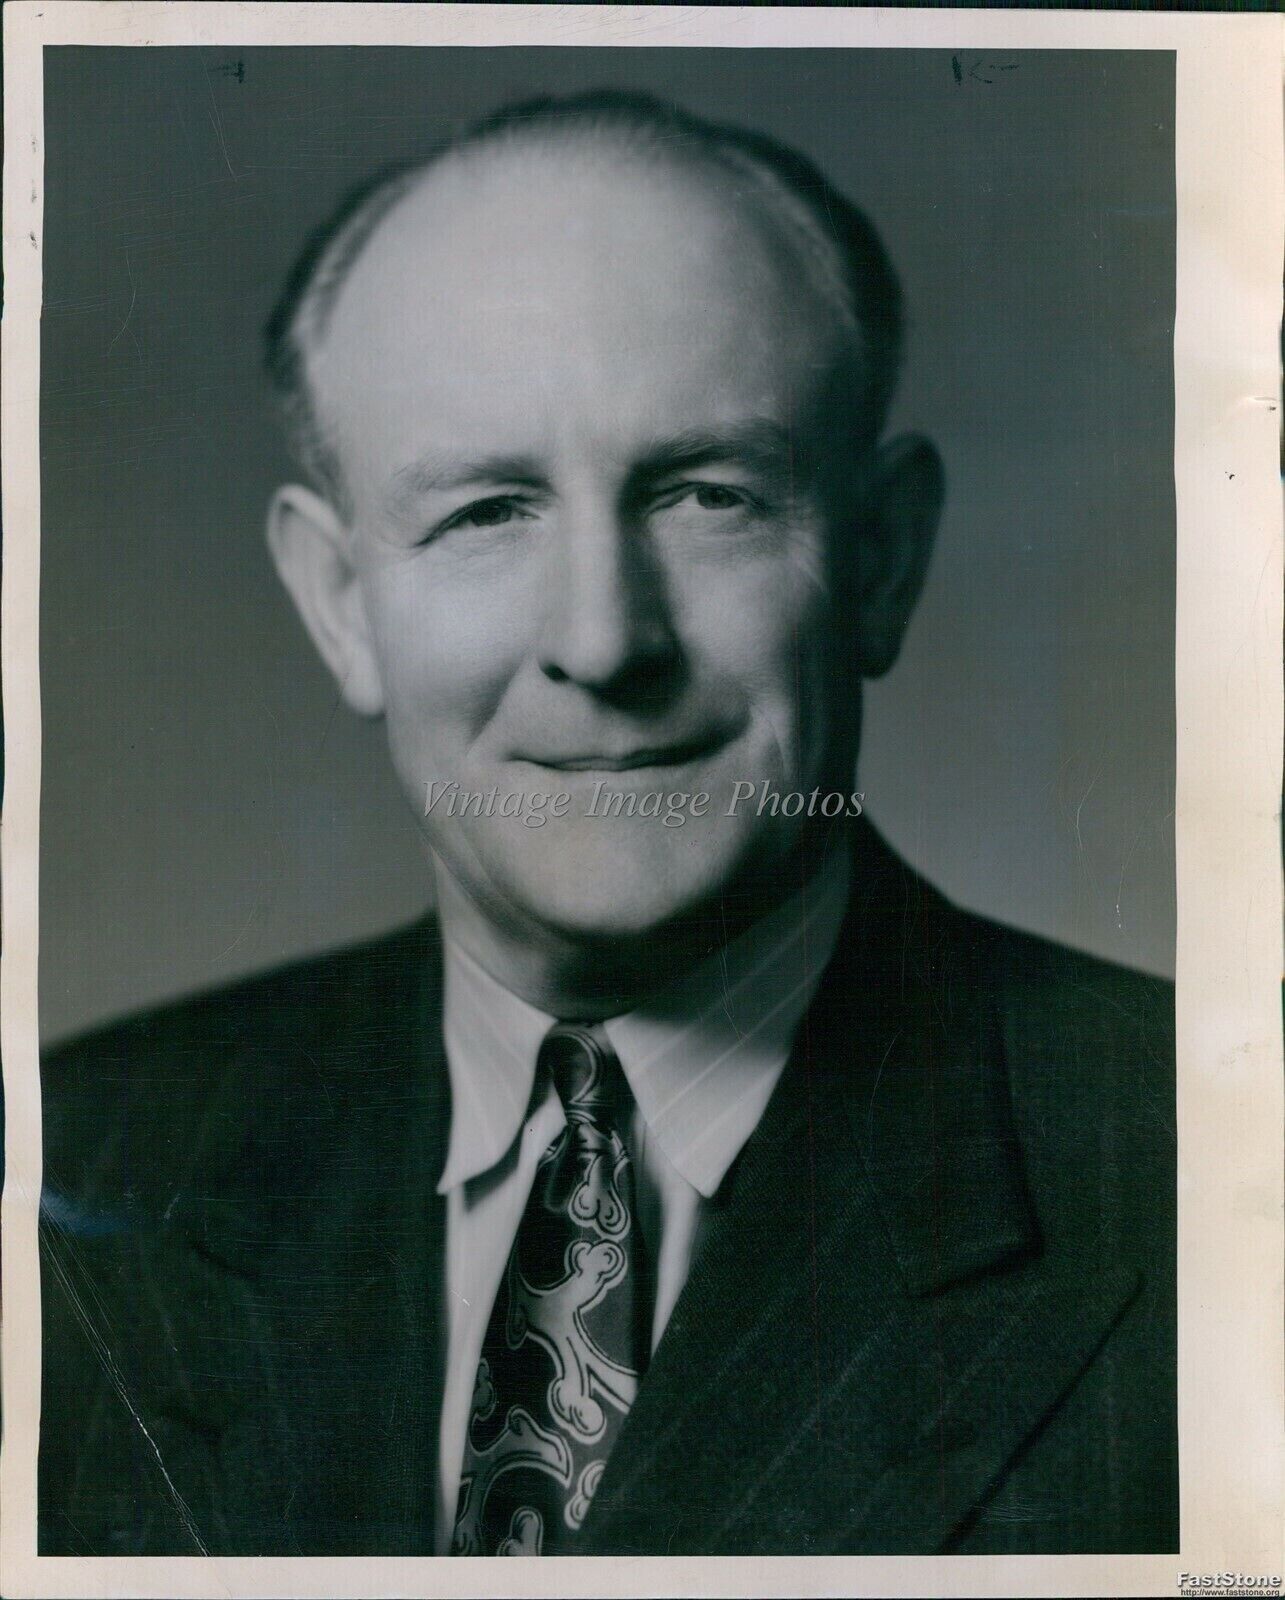 1947 Seattle Horticulturist & Garden Editor Cecil Solly Journalist 8X10 Photo